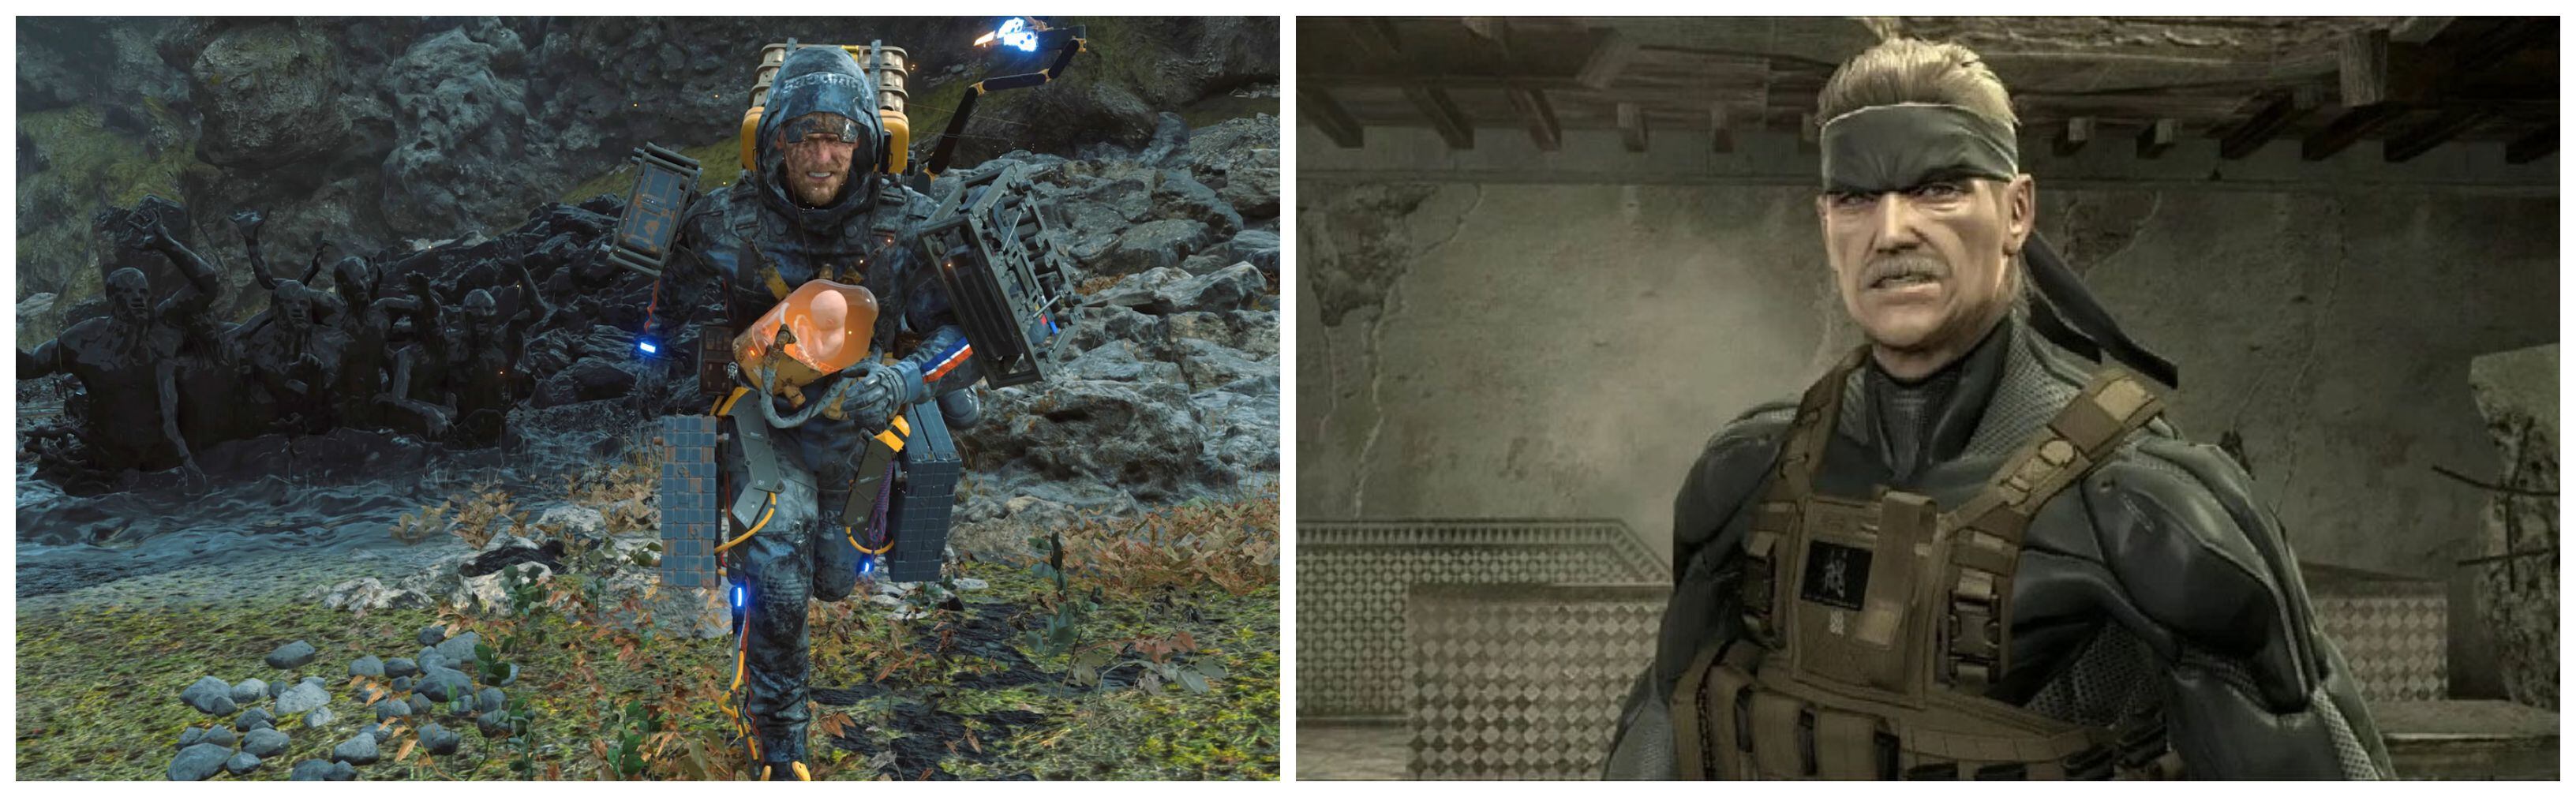 Imágenes de 'Death Stranding' y 'Metal Gear Solid 4'.